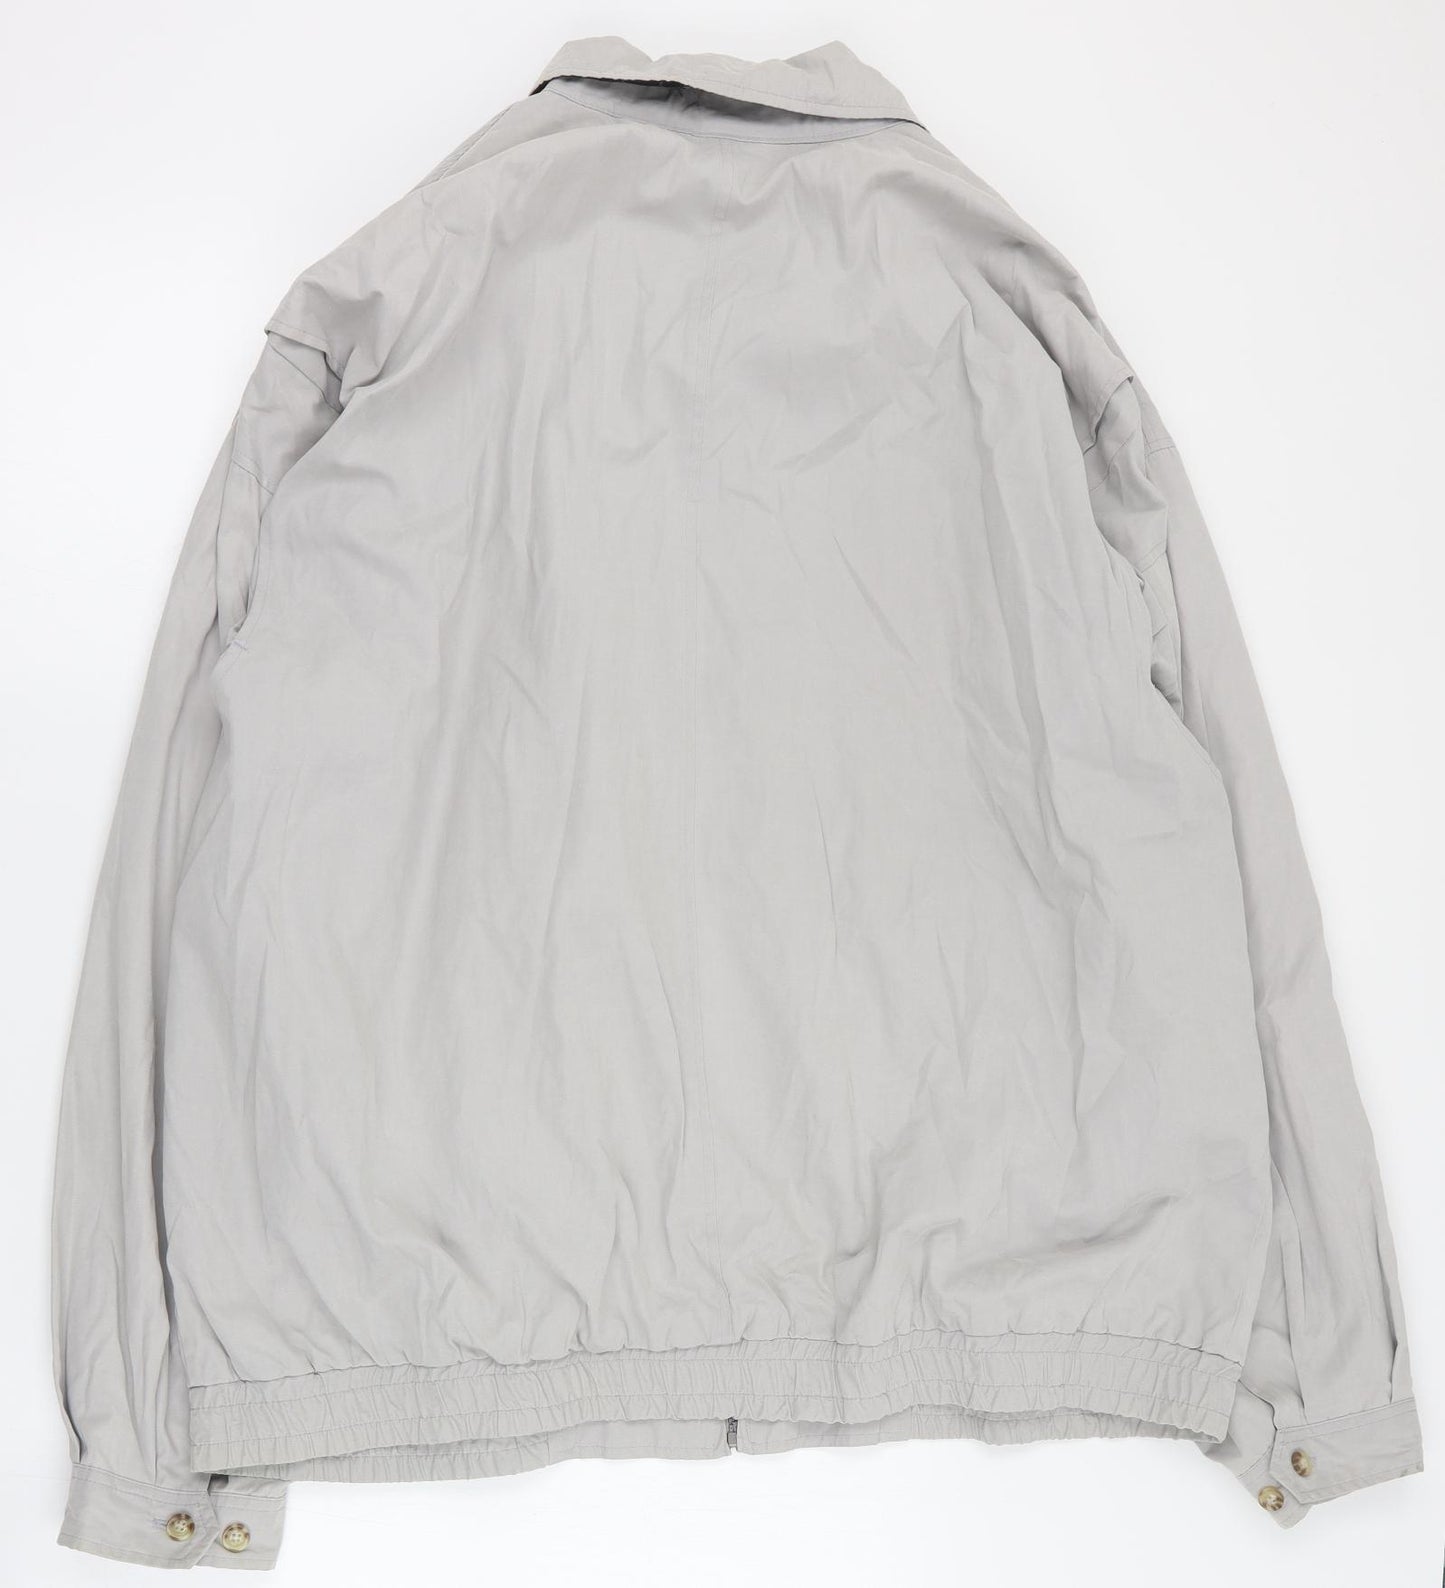 South Bay Mens Grey   Pea Coat Coat Size XL  Zip